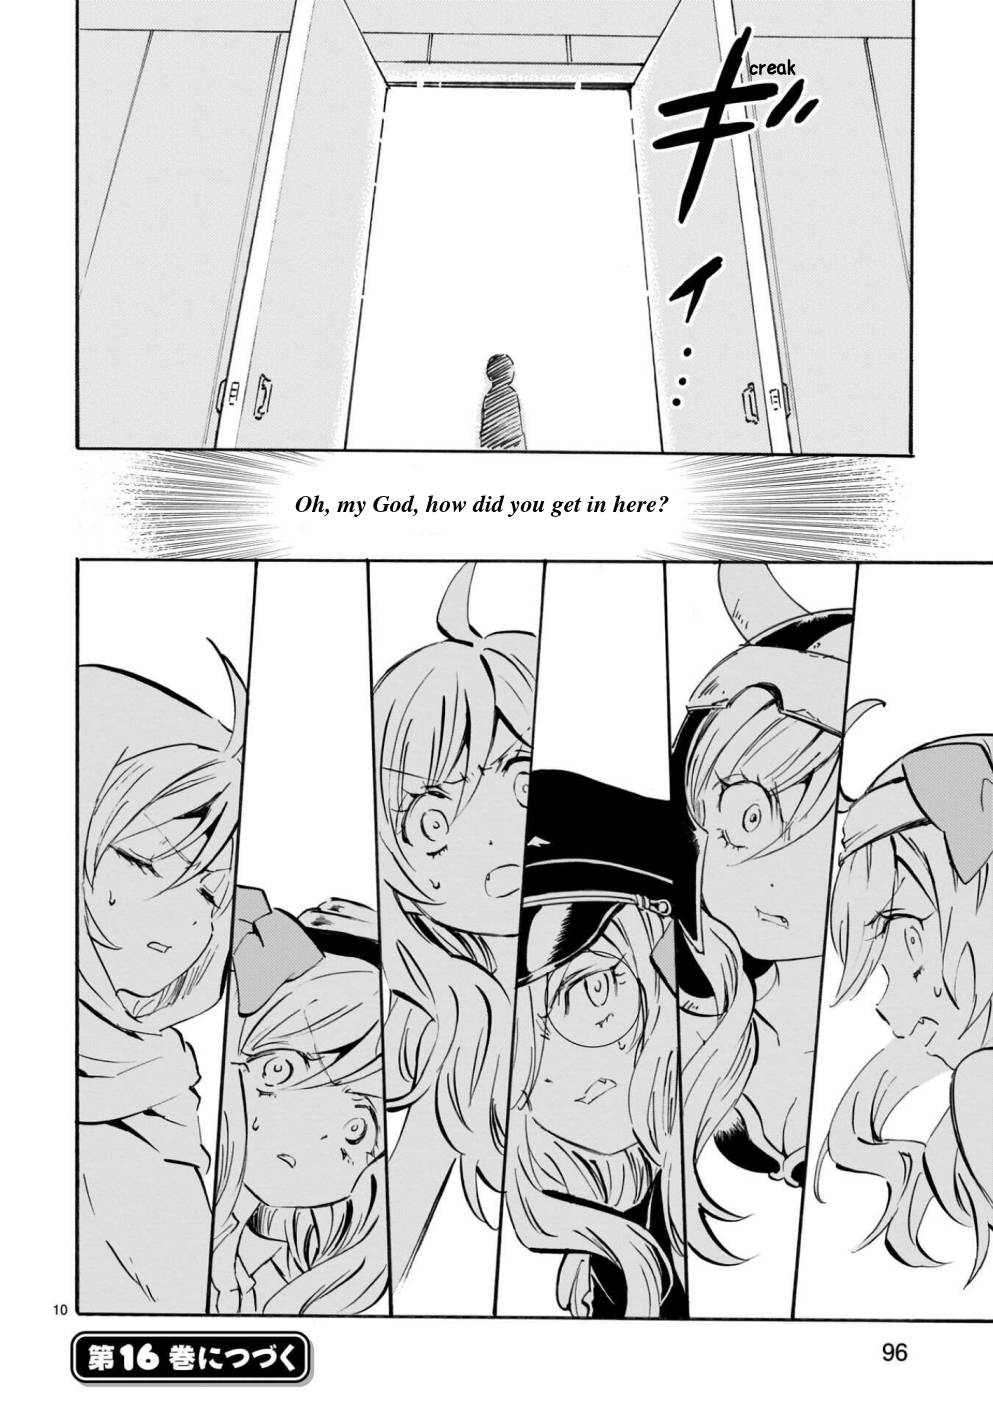 Jashin-chan Dropkick chapter 174 page 10